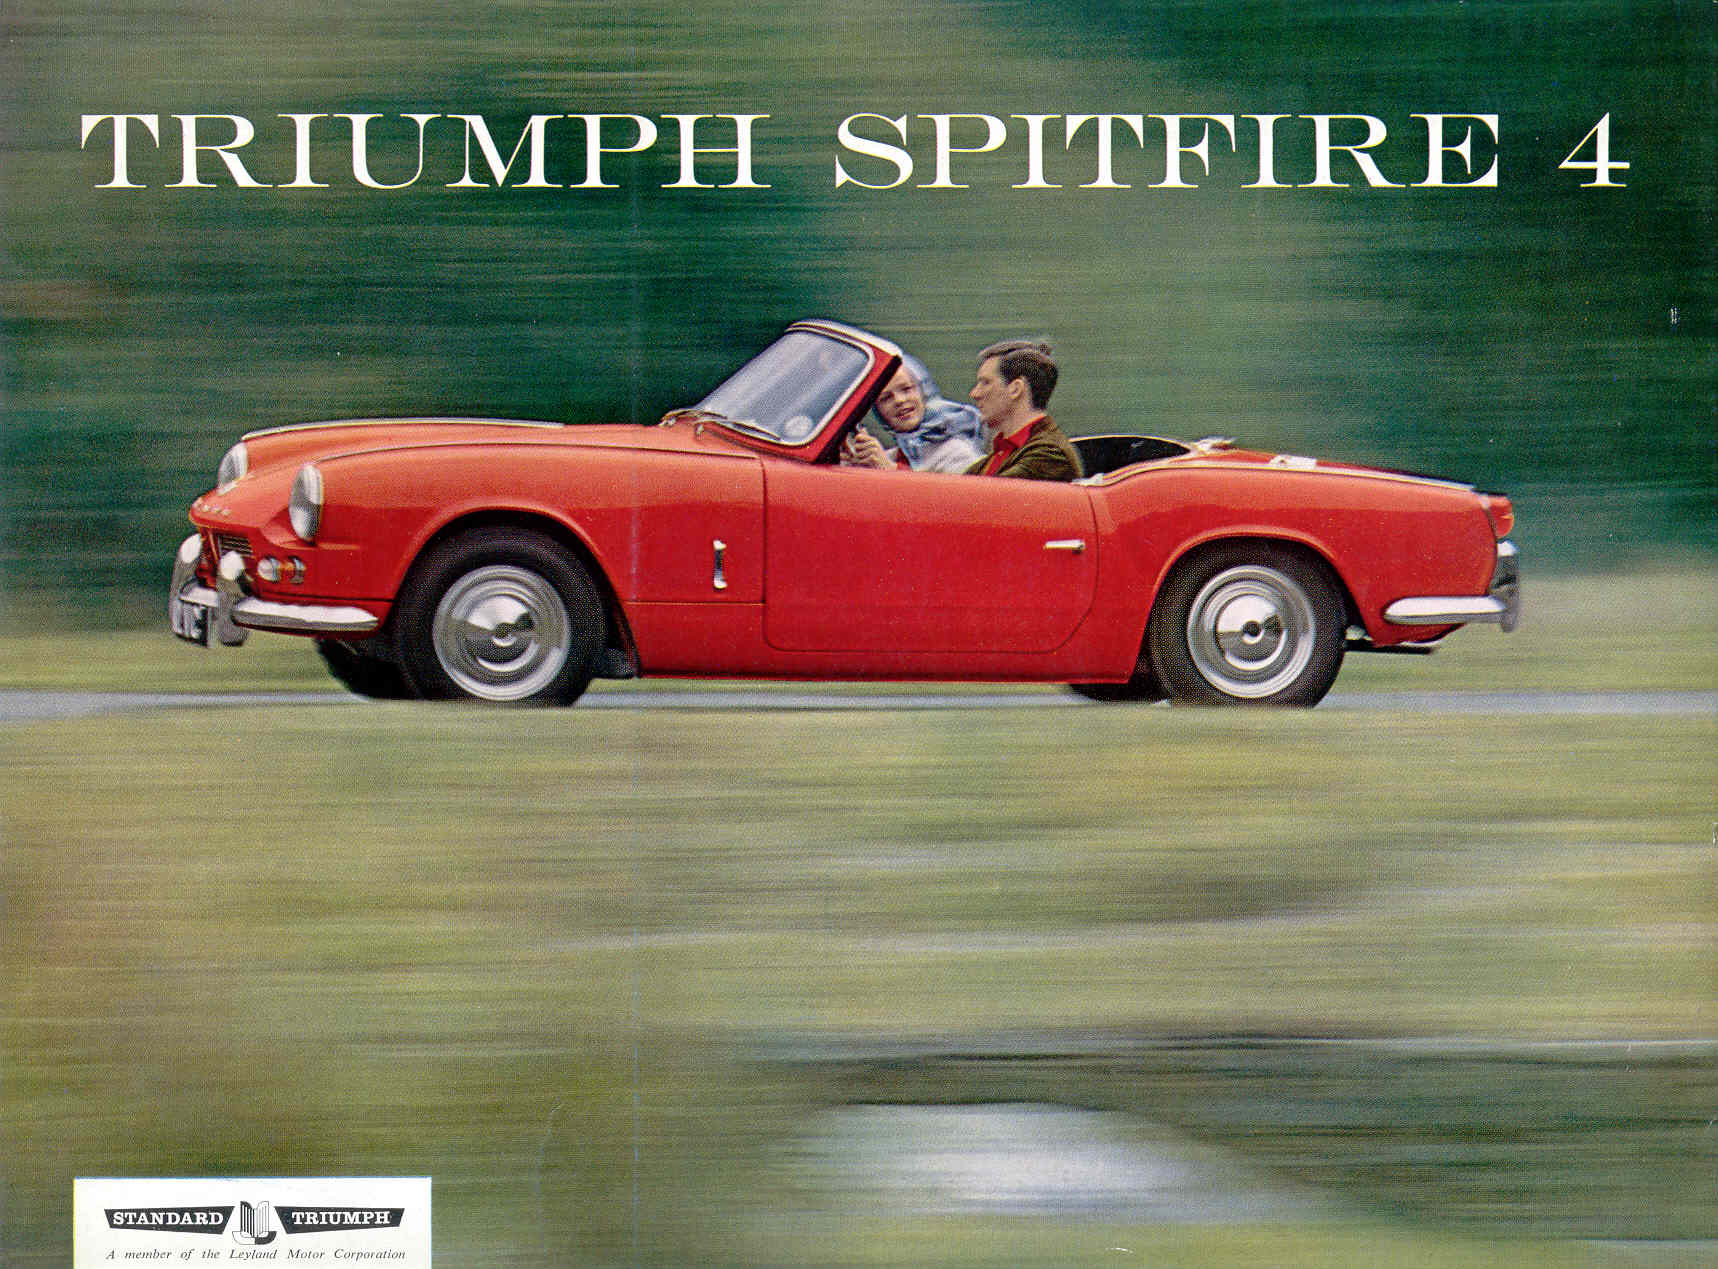 Triumph- Spitfire MK I bzw. Spitfire 4 (UK)!